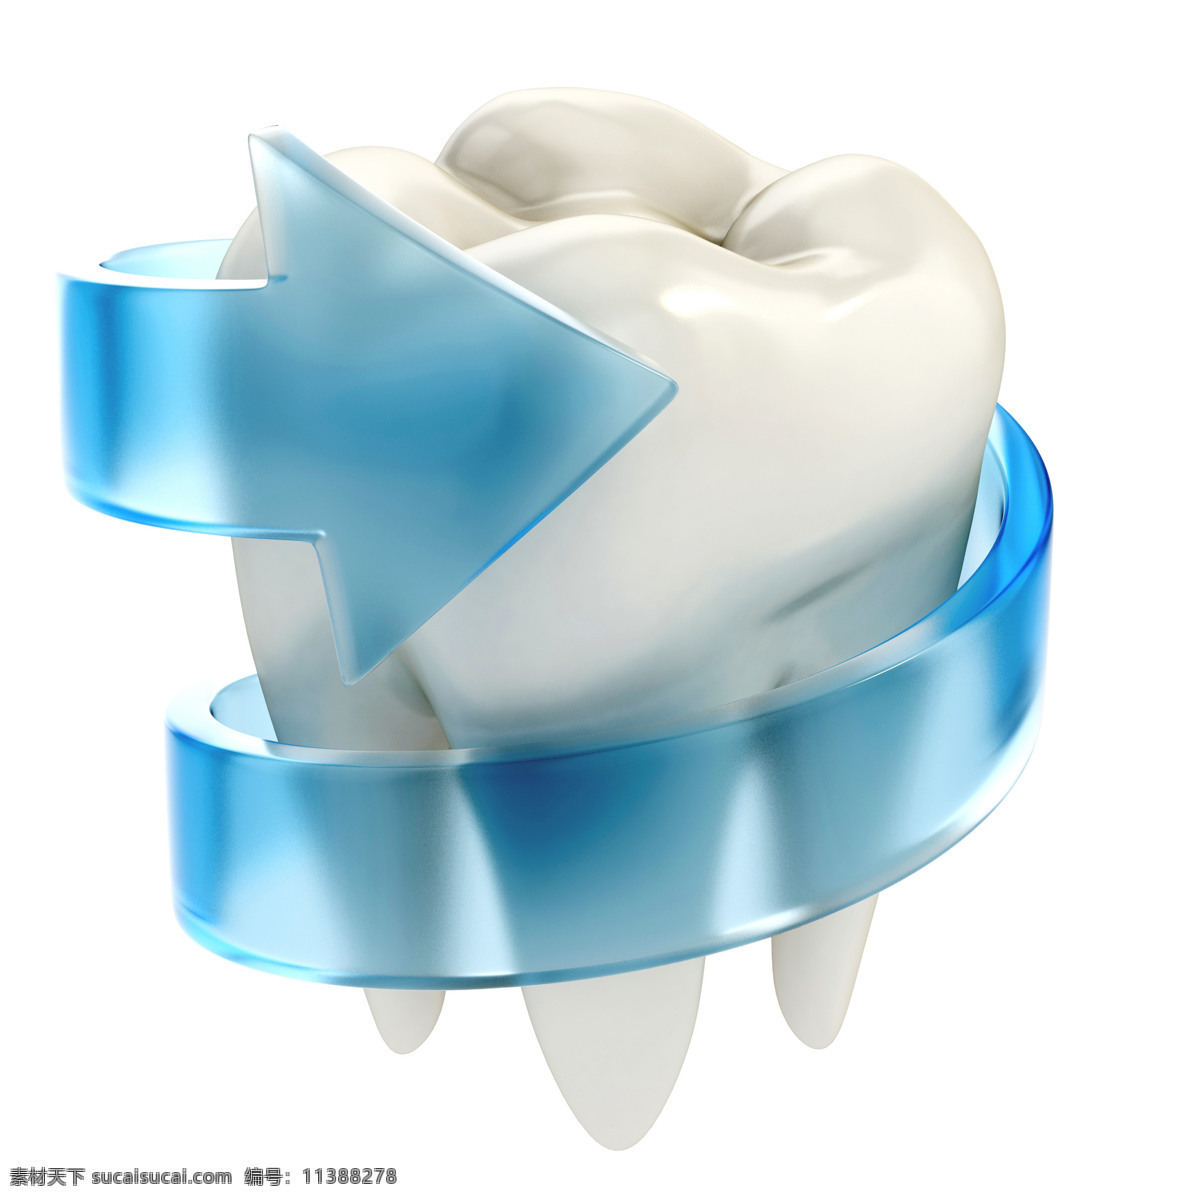 蓝色 箭头 围绕 白色 牙齿 缠绕 牙科 模型 人体器官图 人物图片